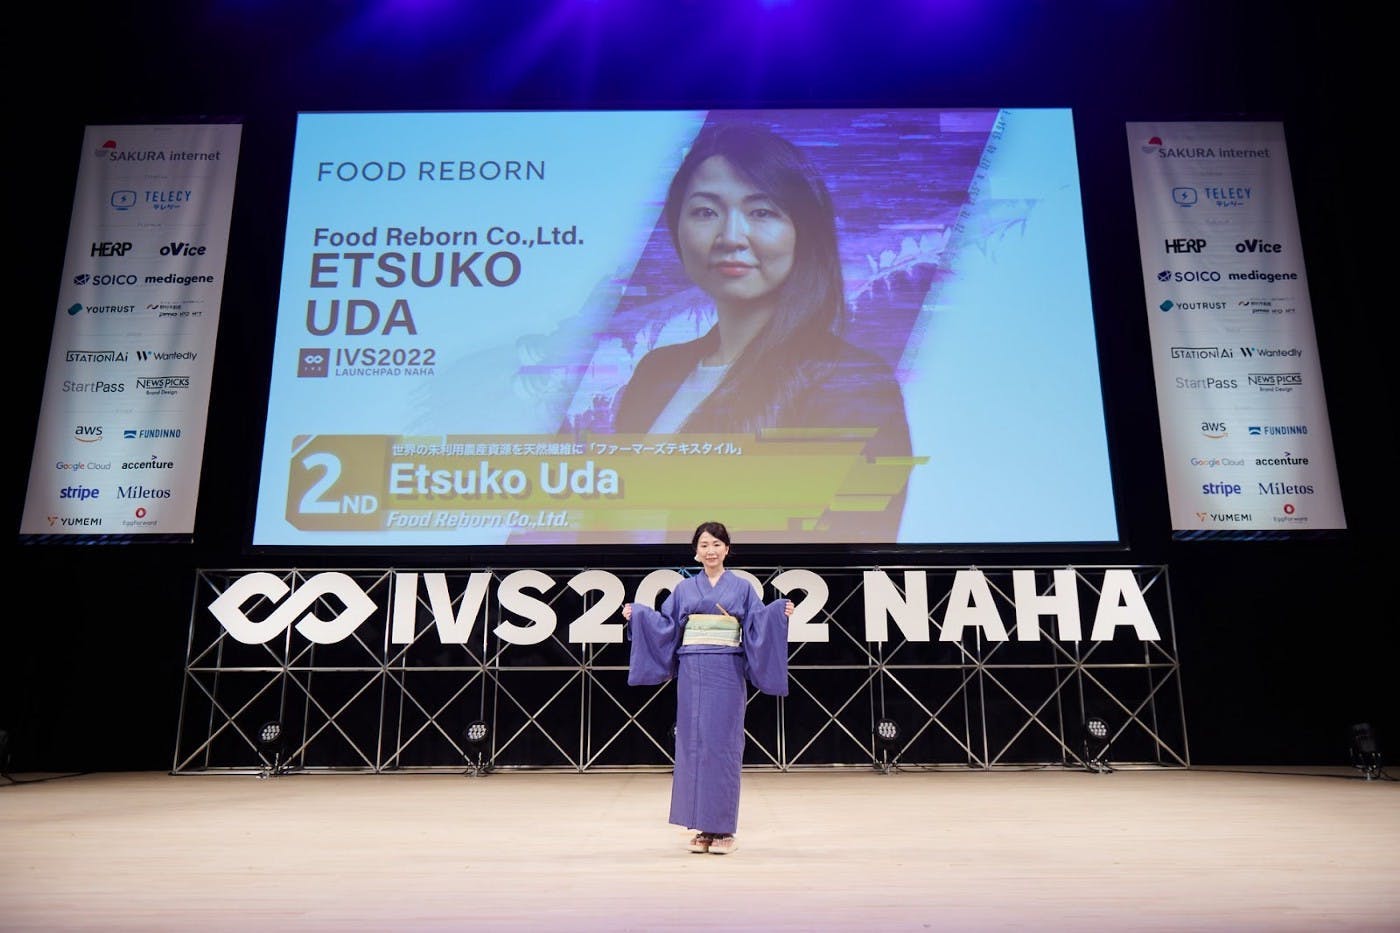 Food Reborn CEO Etsuko Uda